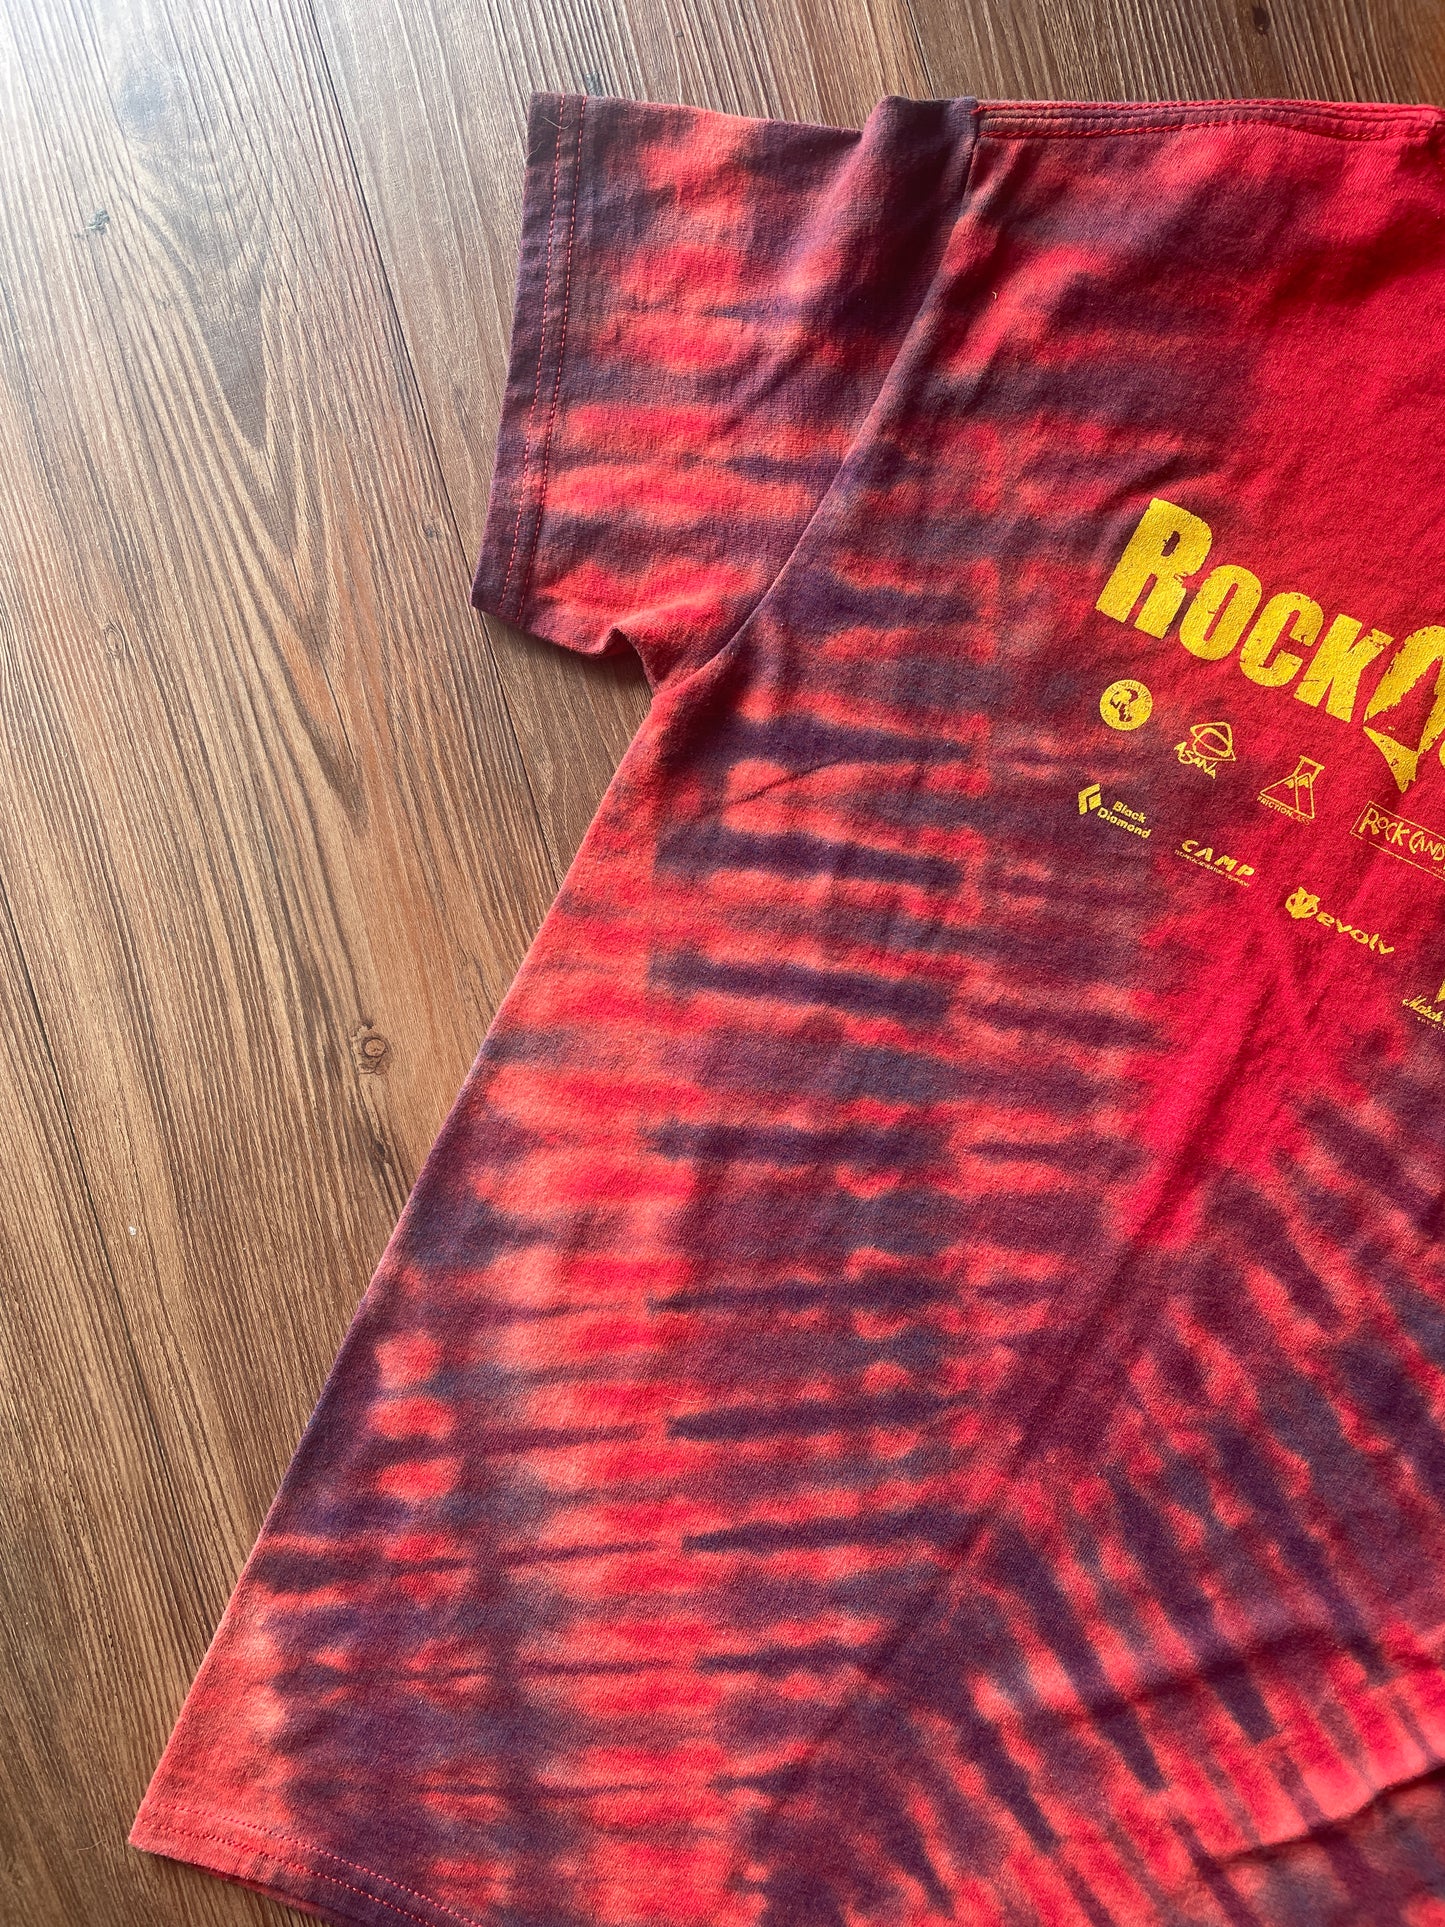 Small Men’s Bouledmon Gotta Send ‘Em All Handmade Tie Dye T-Shirt | Red Bouldering Rock Climbing Tie Dye Short Sleeve